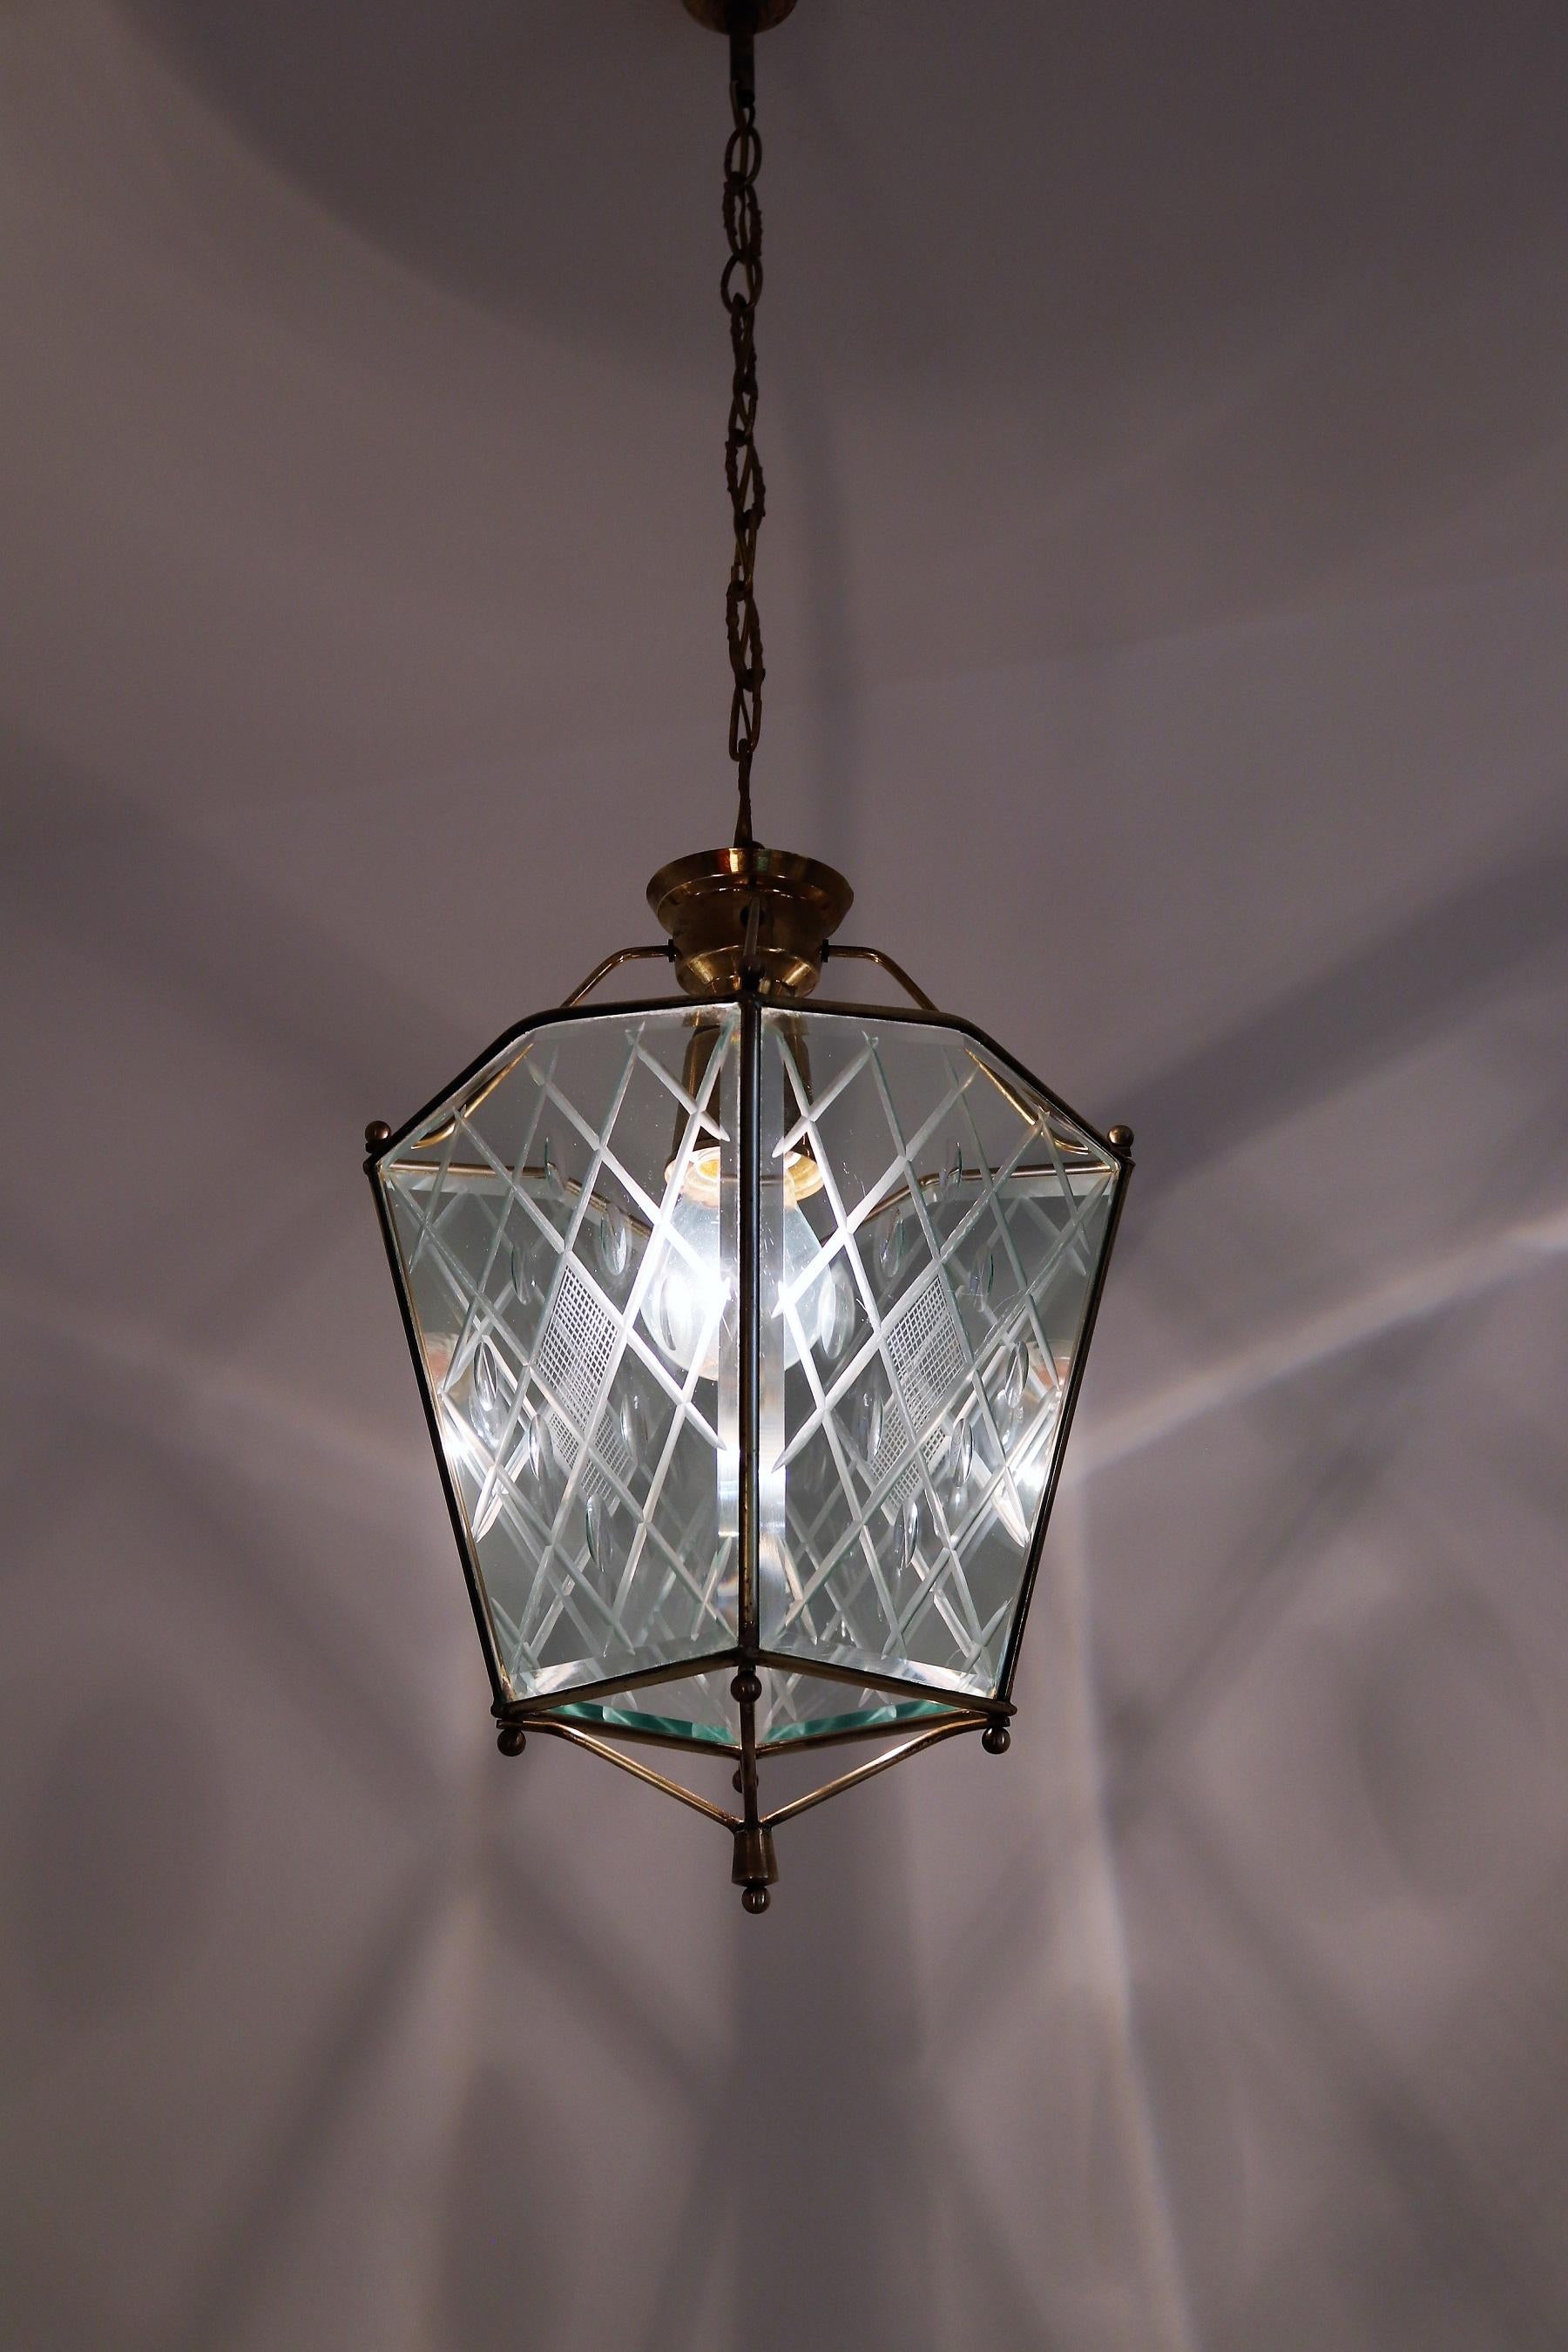 Magnifique lampe suspendue ou lanterne en verre magnifiquement taillé et détails en laiton.
Fabriqué en Italie dans les années 1950.
Parfait pour une petite pièce, une salle de bains ou une entrée.
Le verre taillé est bien meilleur à voir en